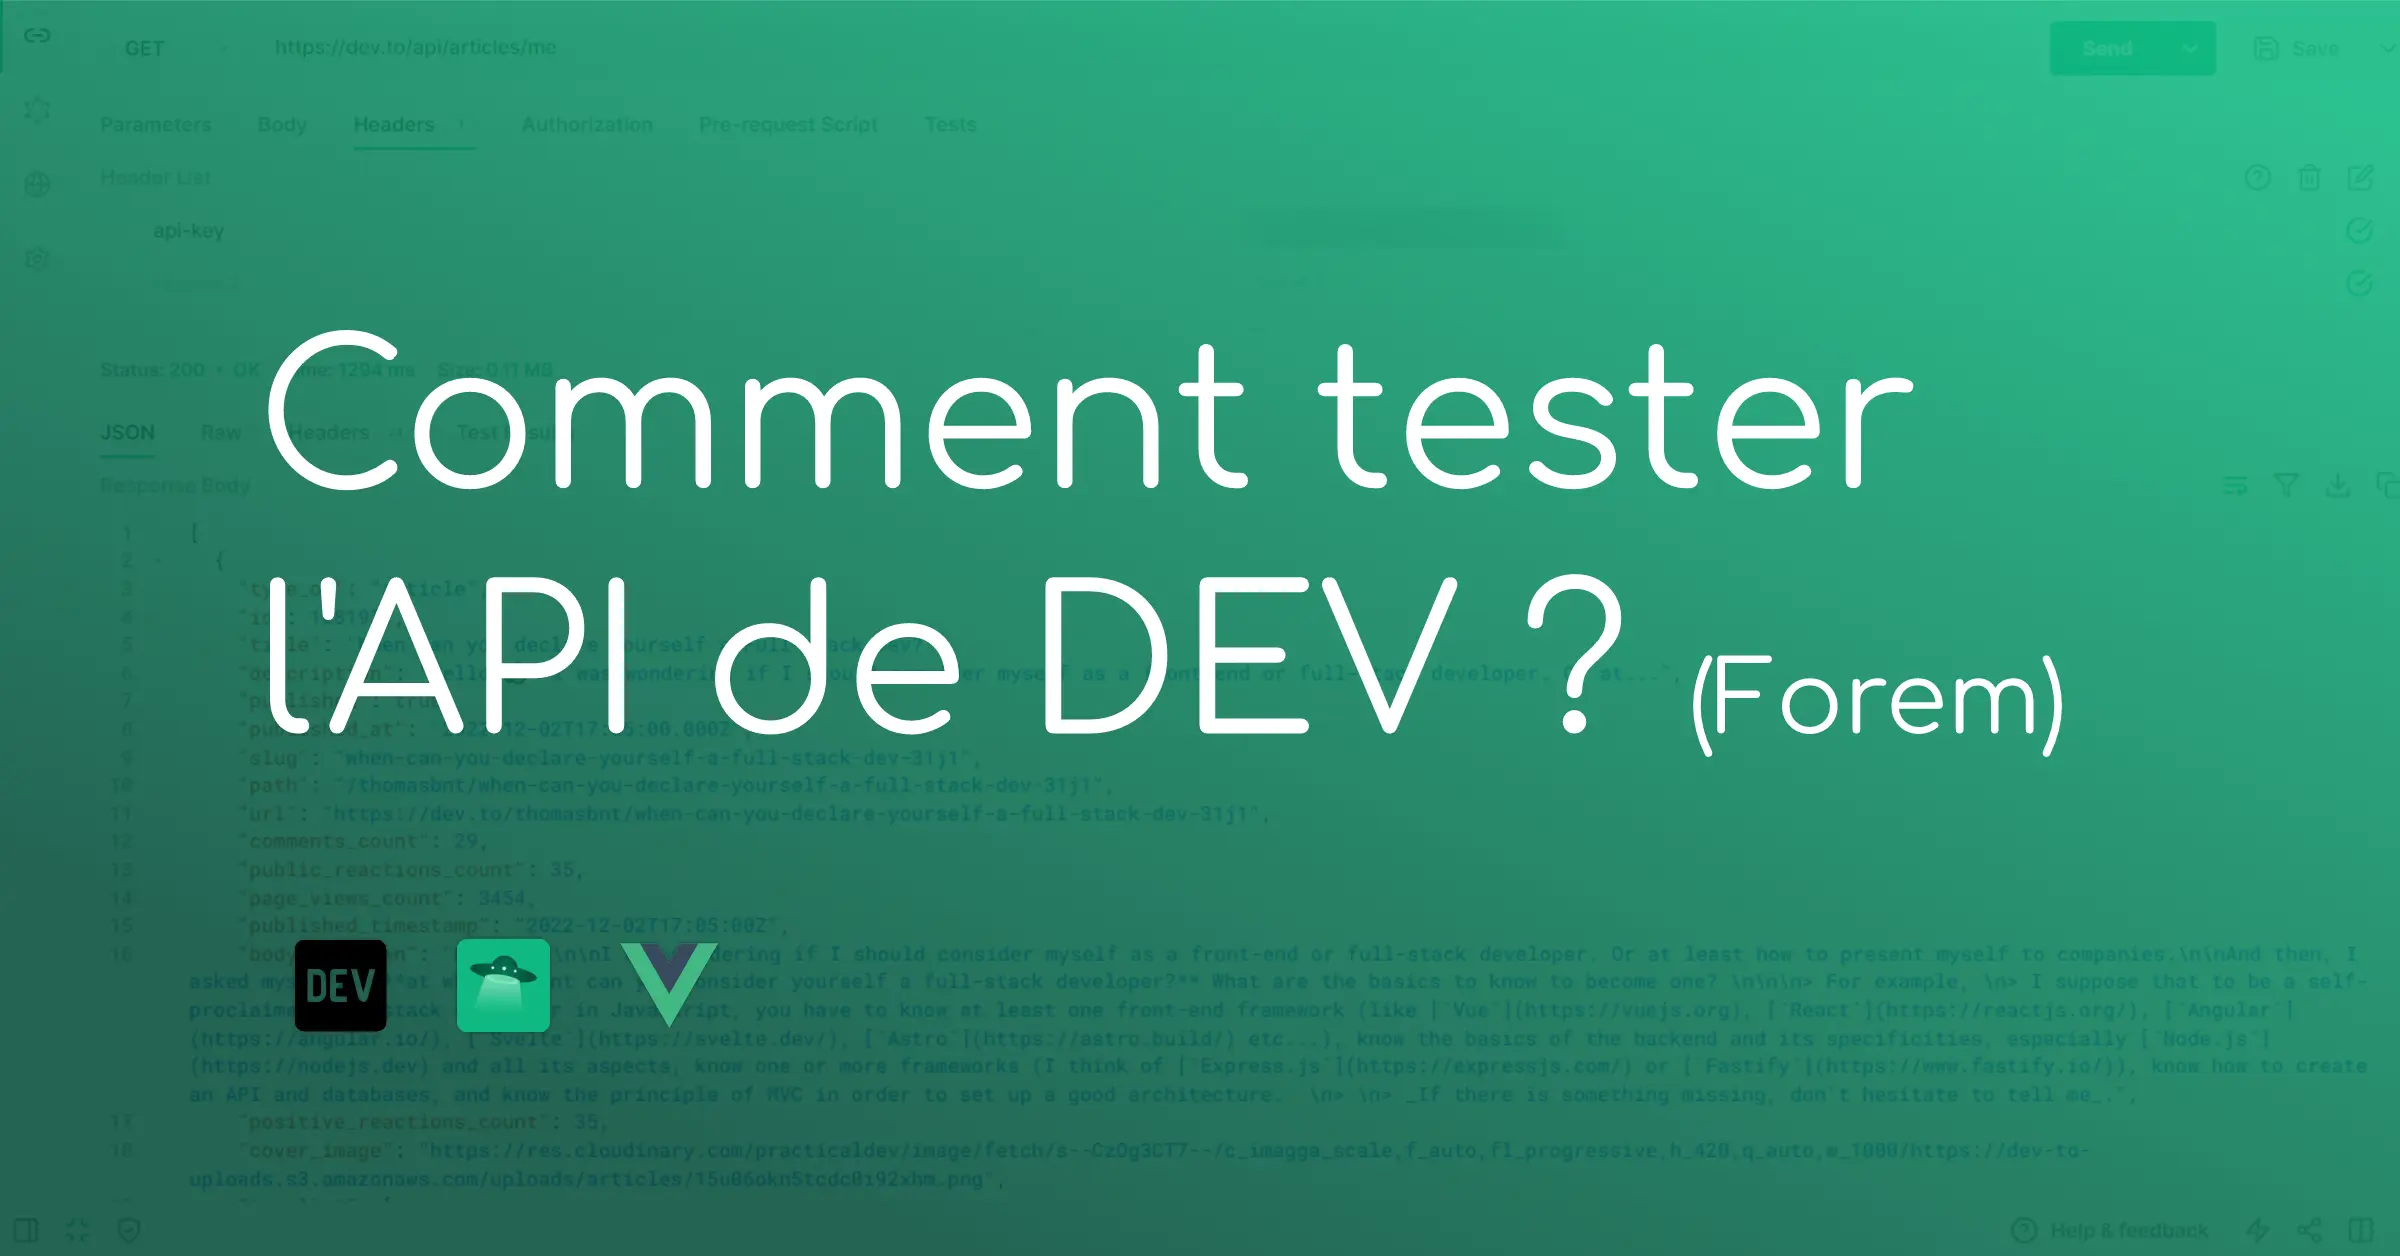 Comment tester l'API de DEV (Forem), on y voit trois logos dont DEV, Hoppscotch et Vue.js